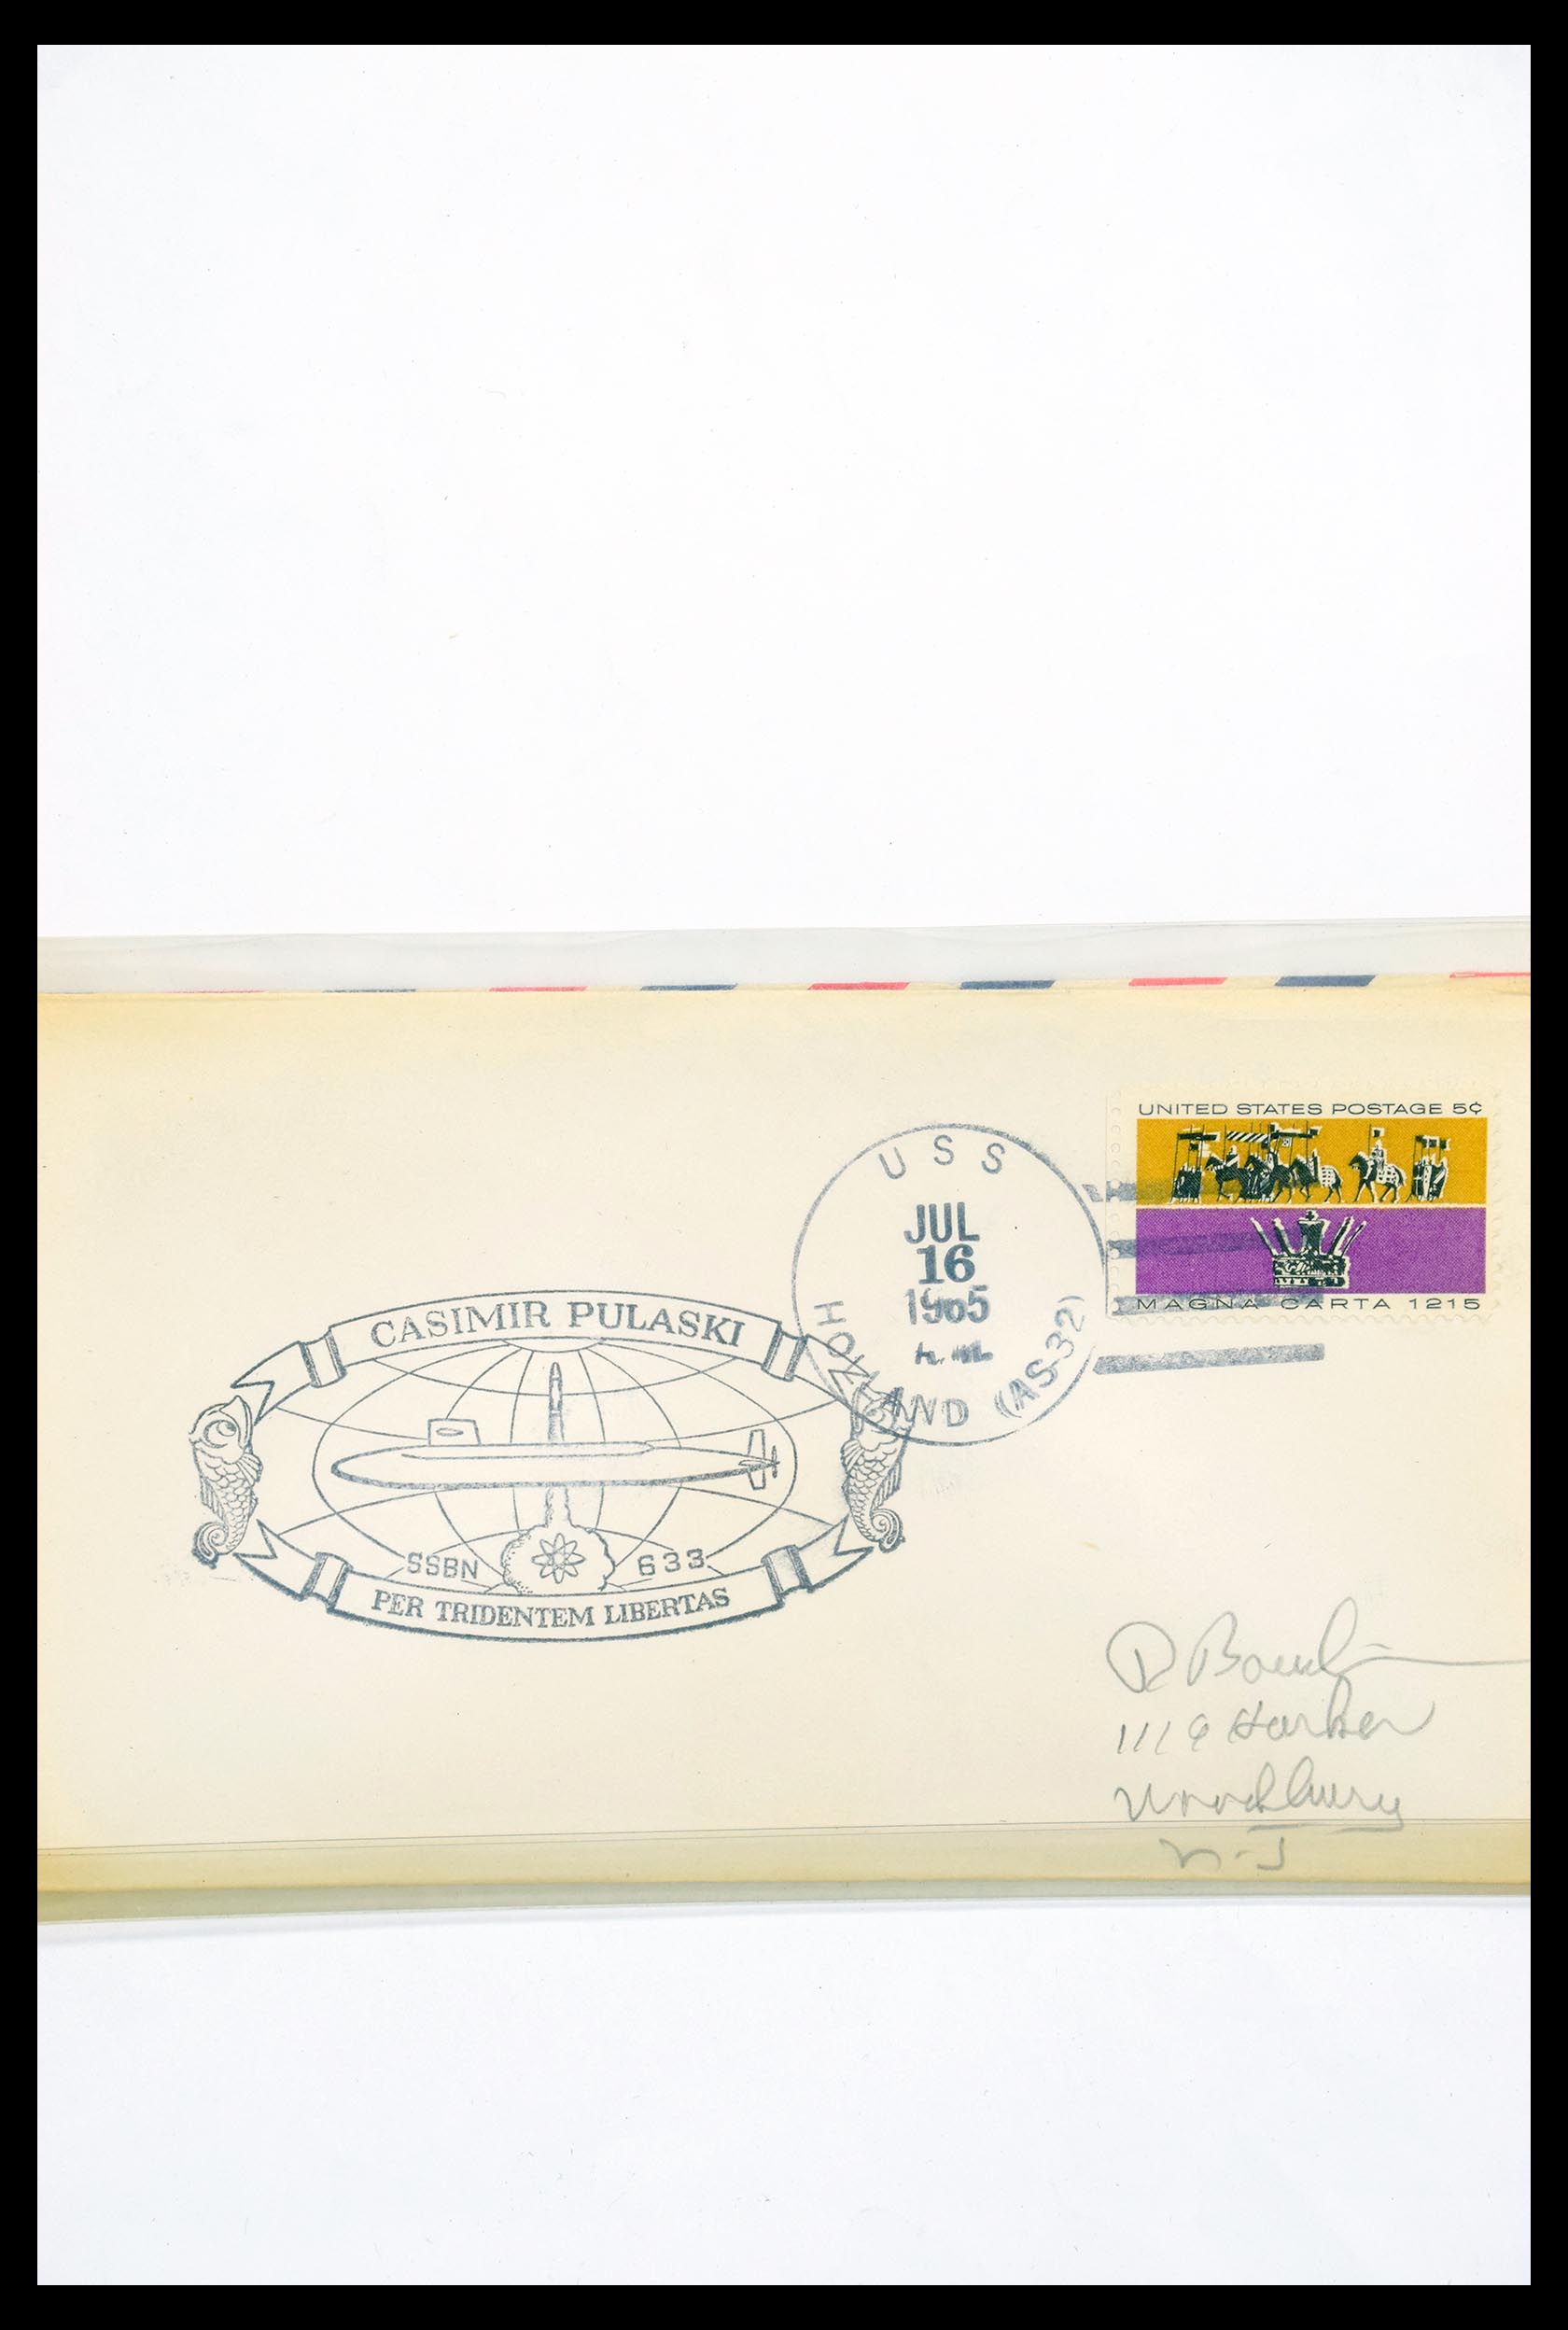 30341 321 - 30341 USA scheepspost brieven 1930-1970.